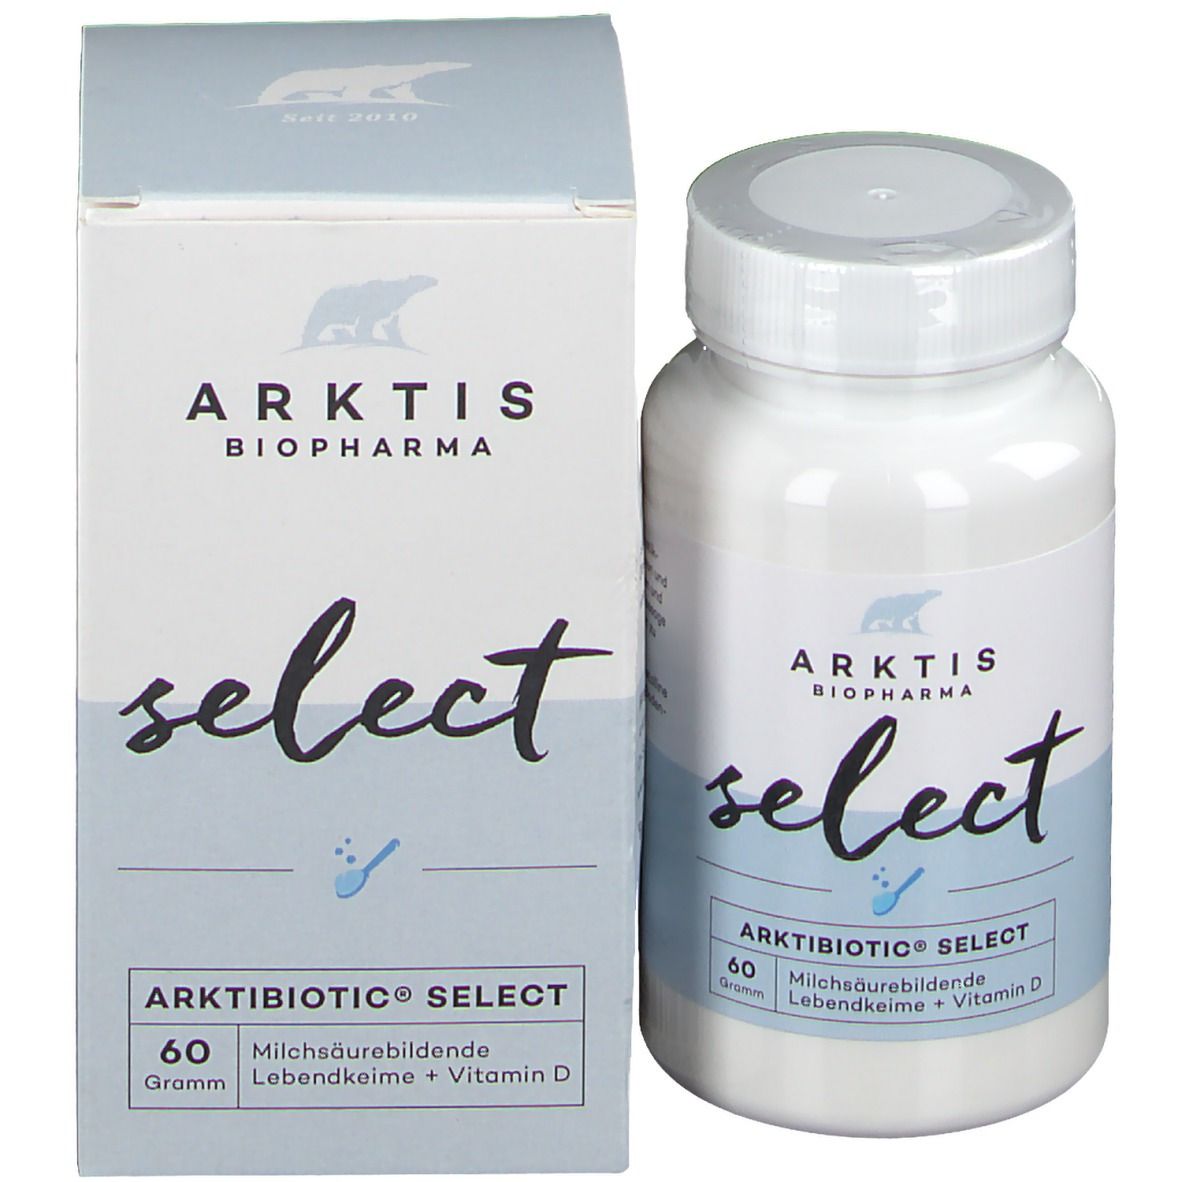 Arktibiotic® Select